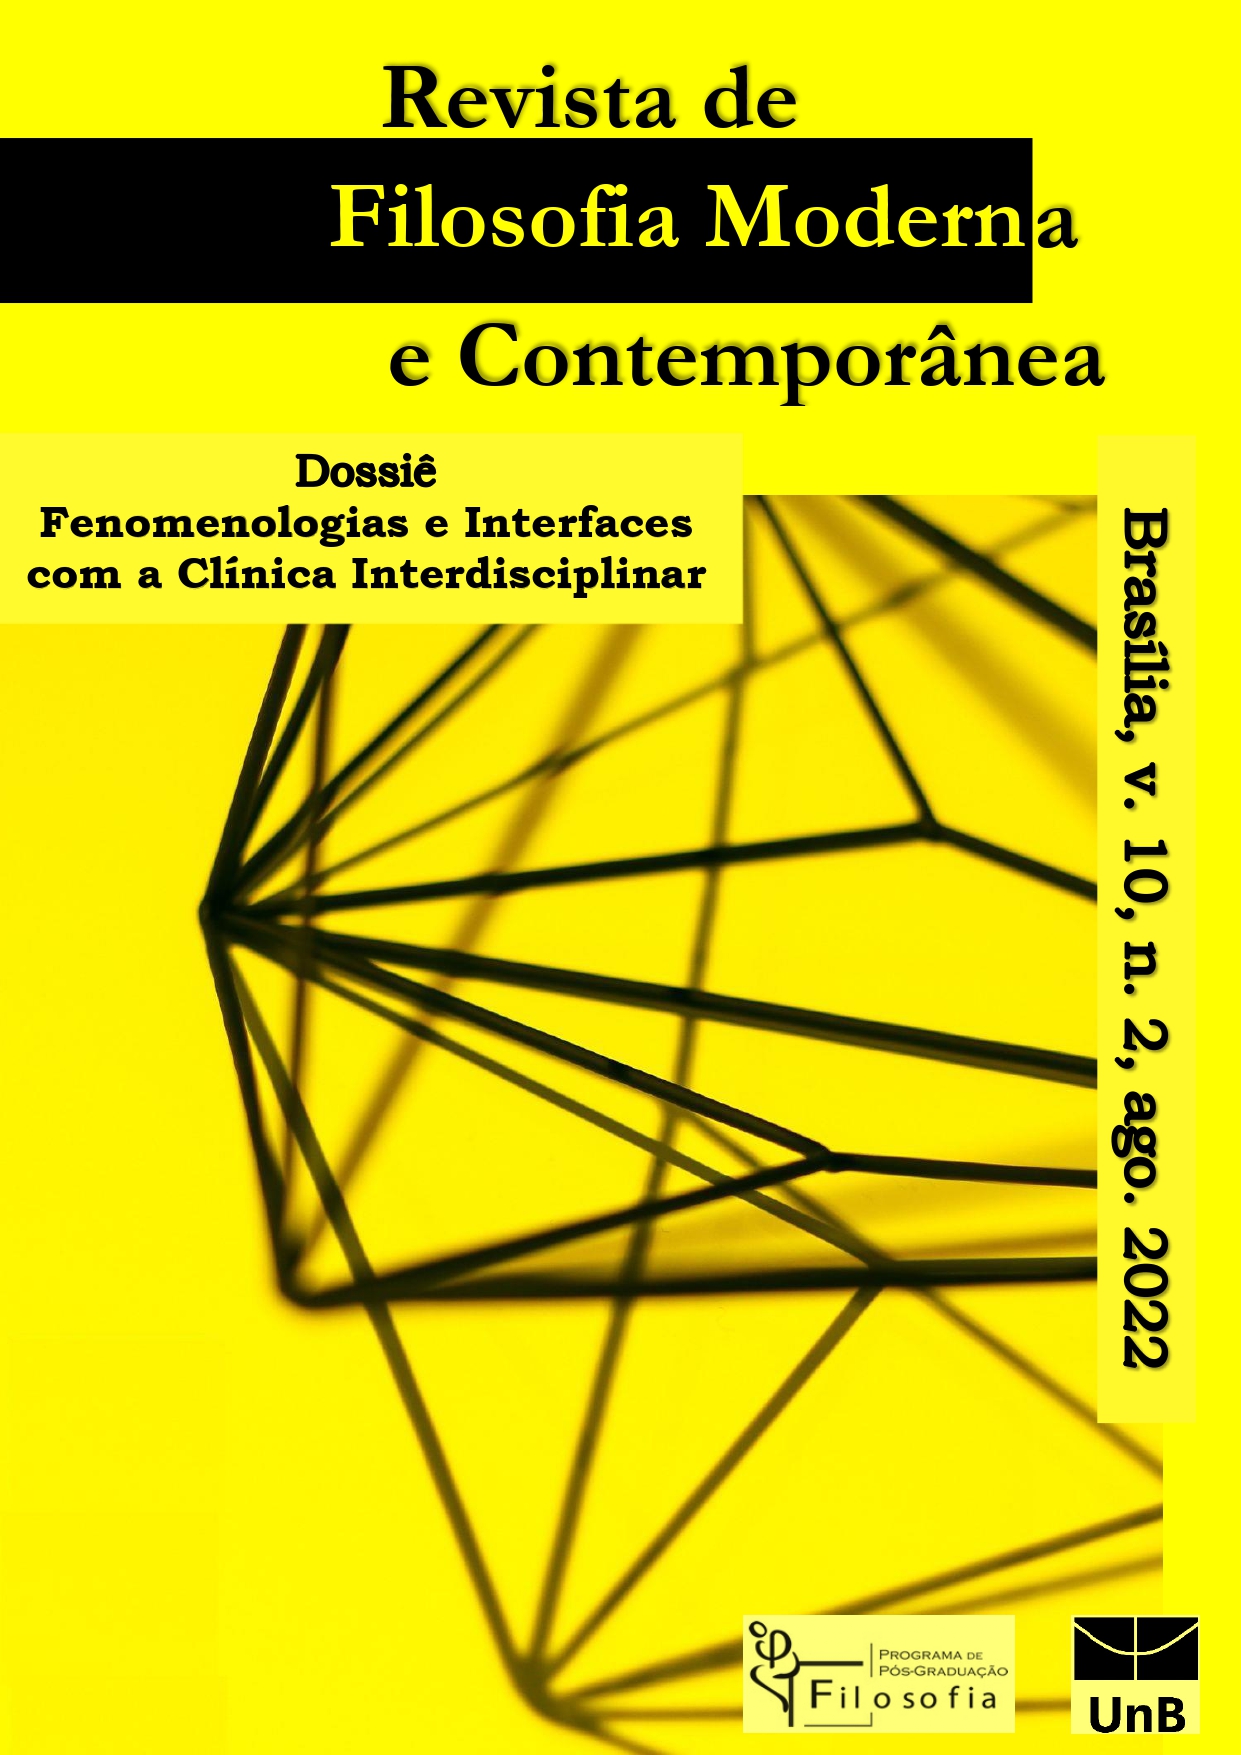 					View Vol. 10 No. 2 (2022):  Dossiê "Fenomenologias e Interfaces com a Clínica Interdisciplinar"
				